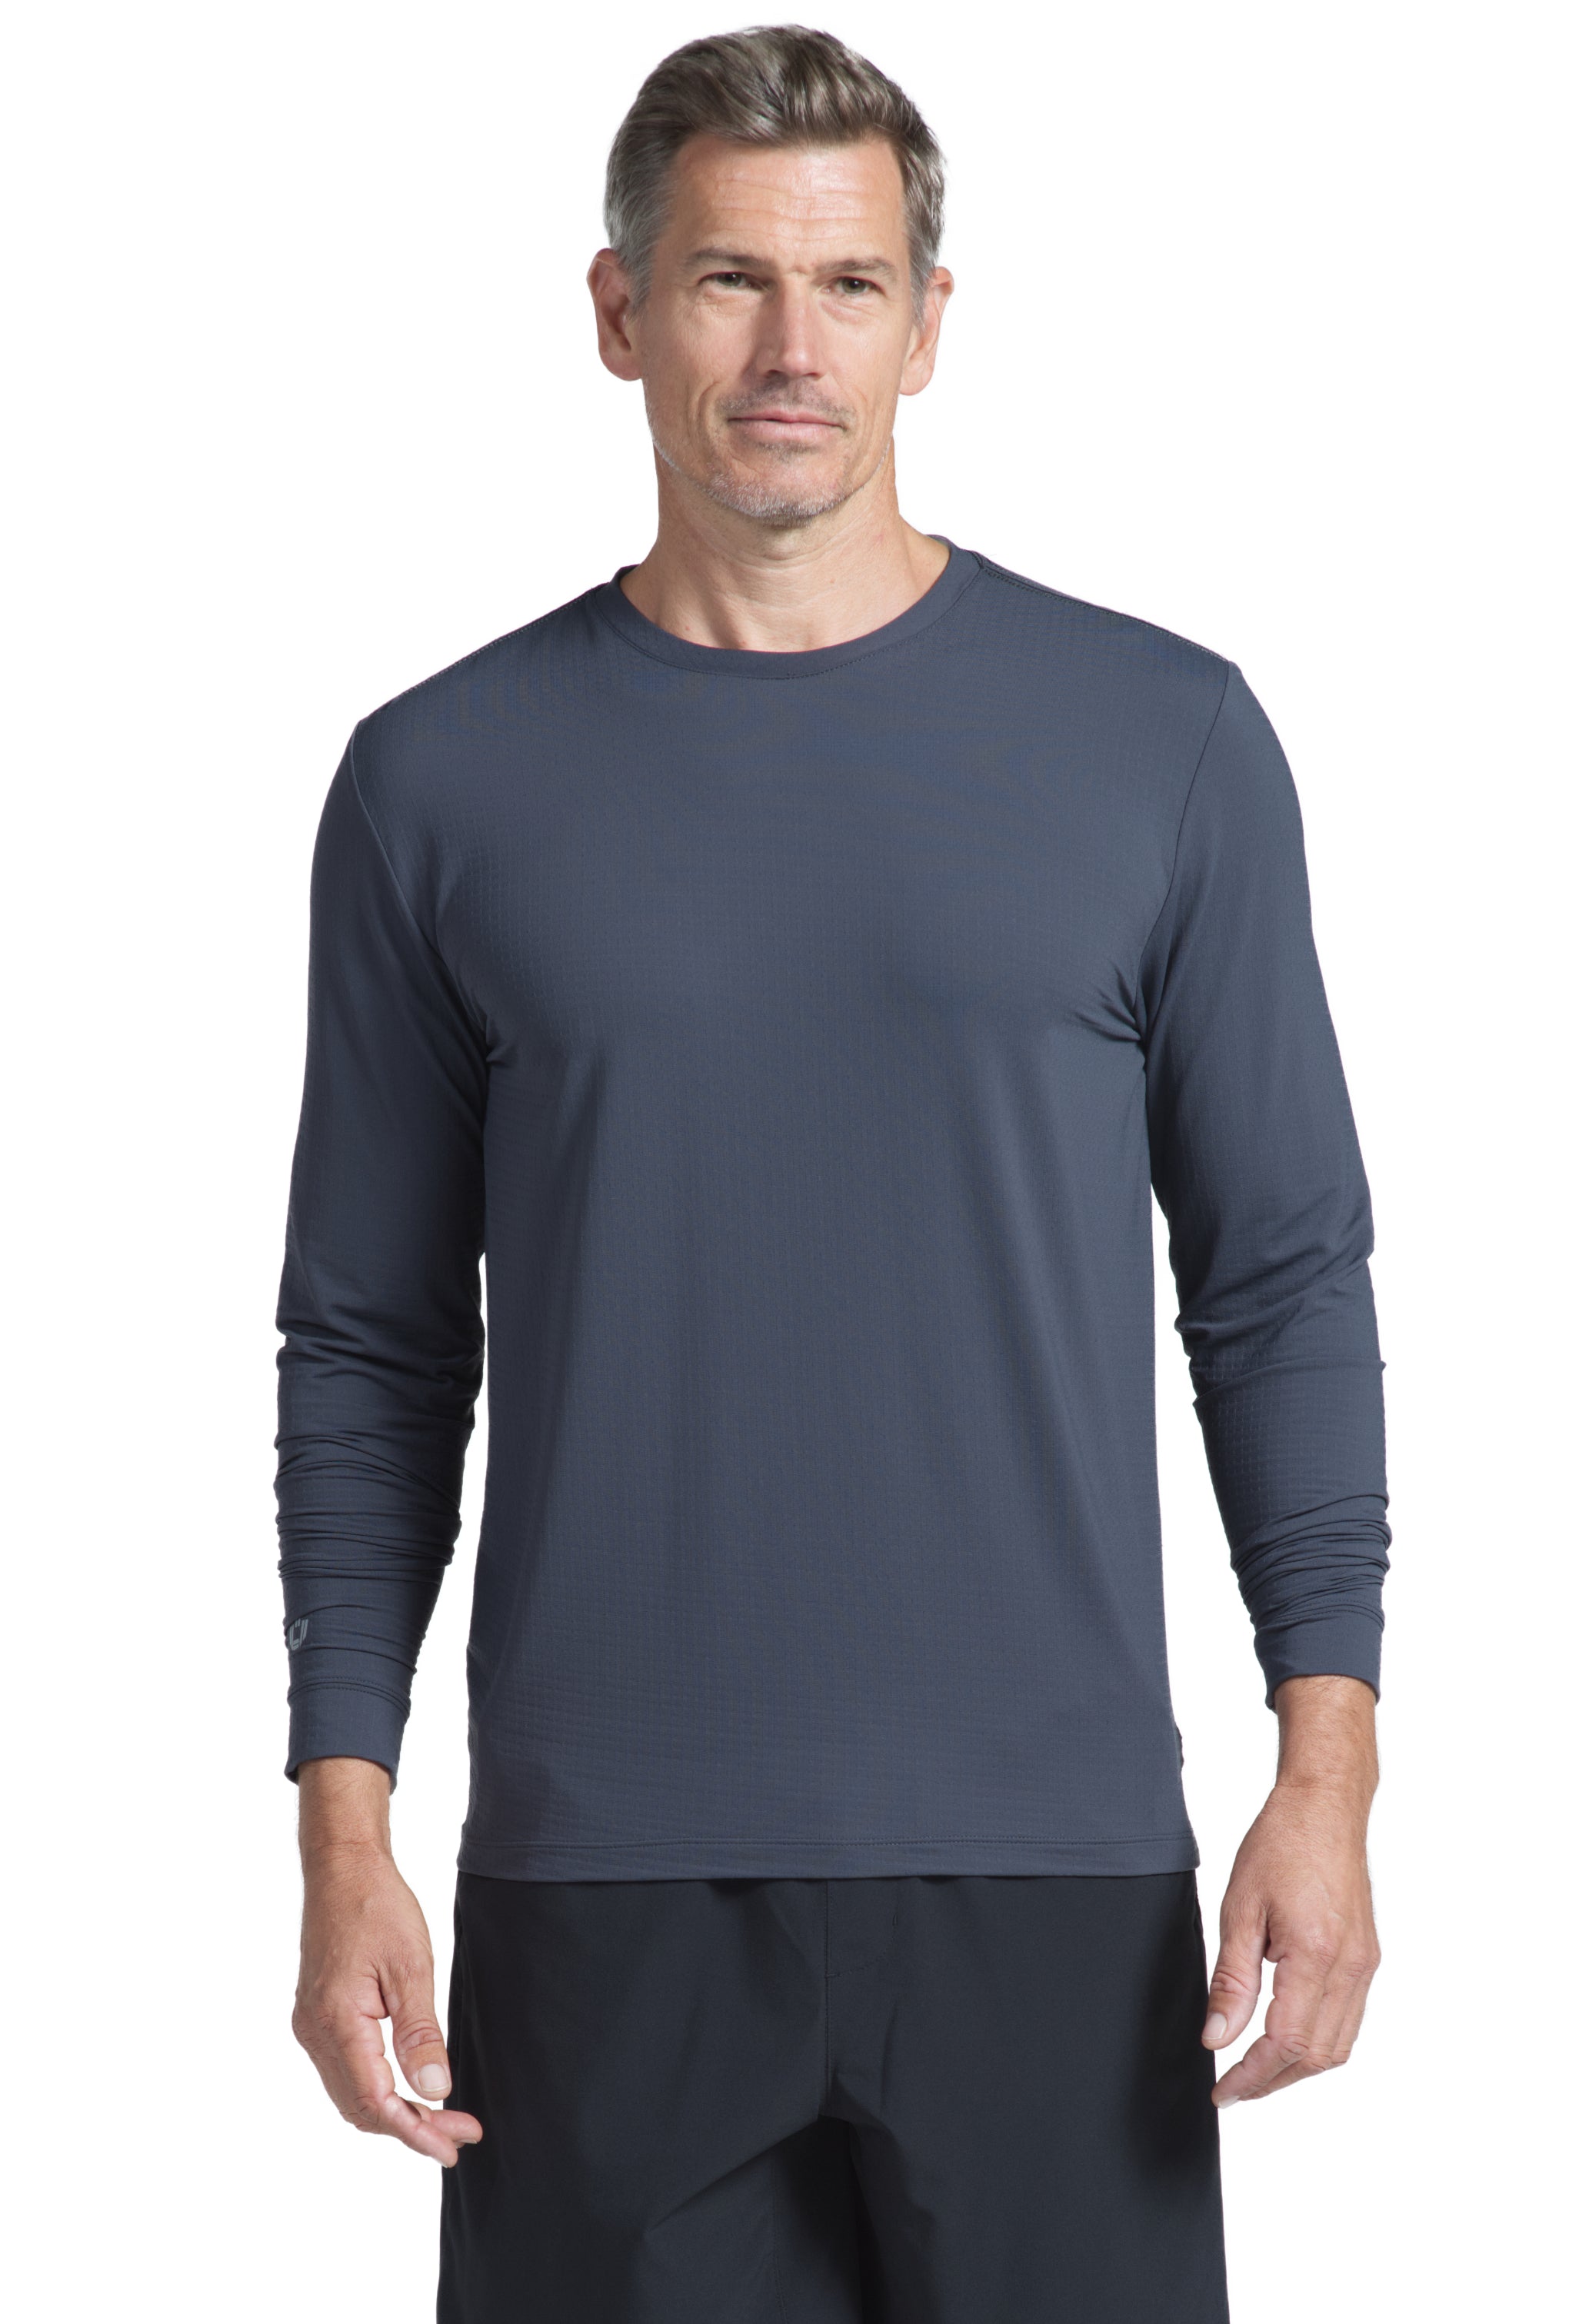 Long Sleeve Crewneck T-Shirt - 93199 (Modern Fit)